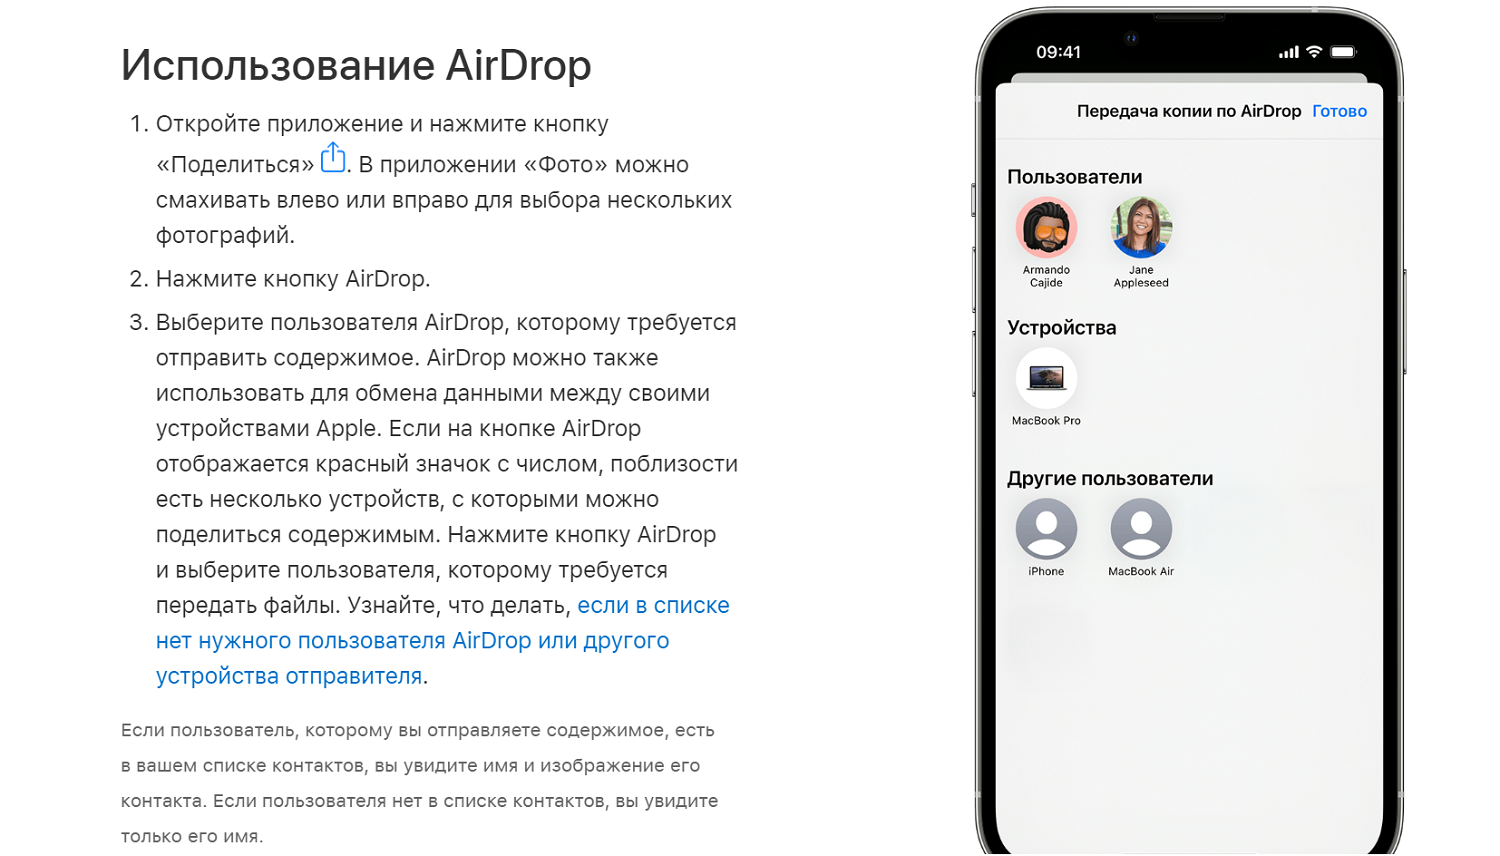 Как использовать AirDrop на iPhone